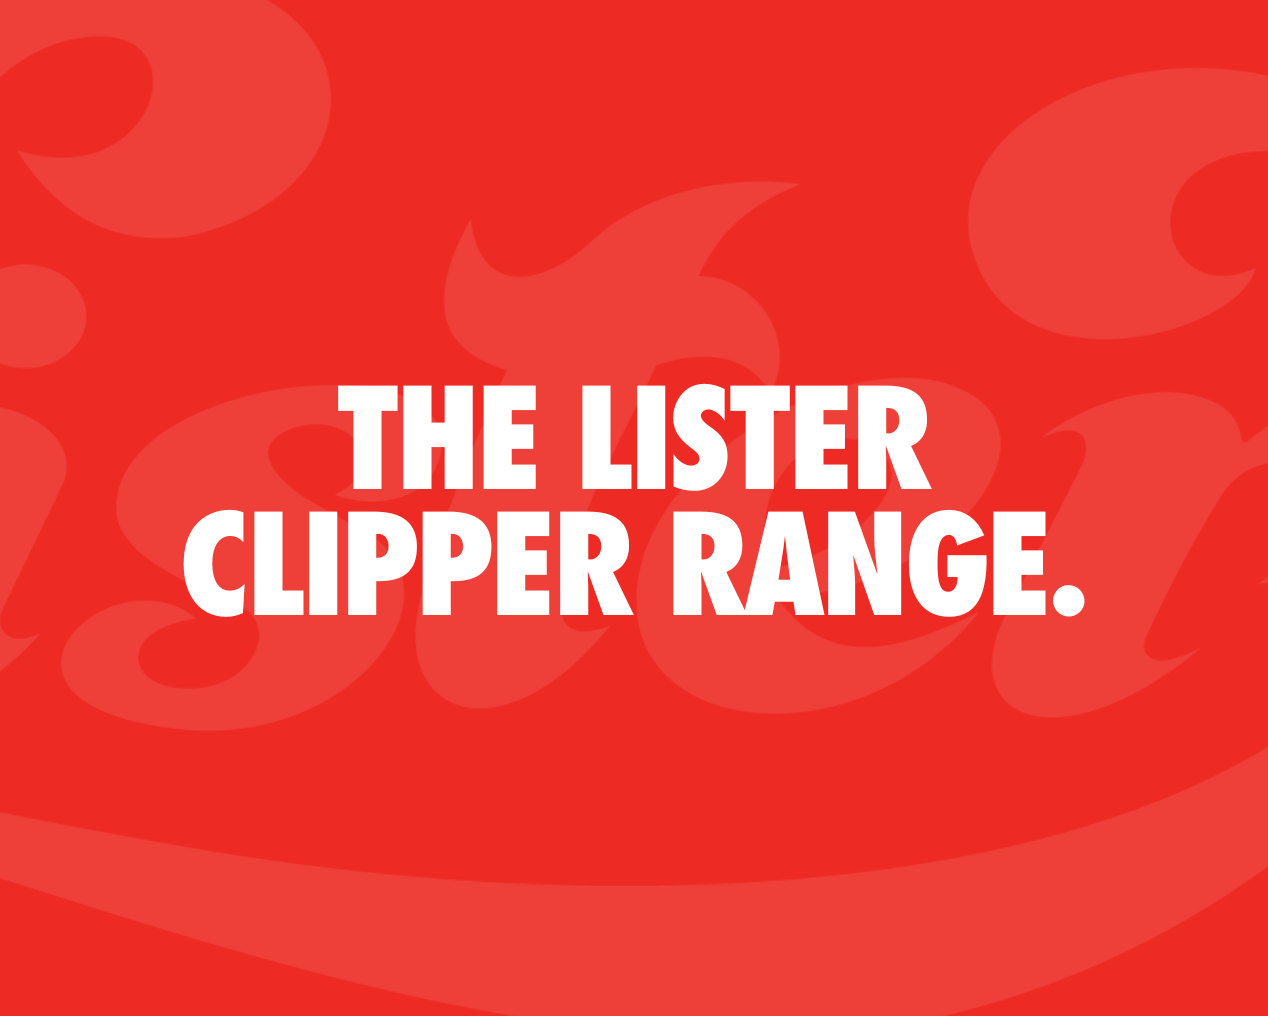 The Lister Clipper Range